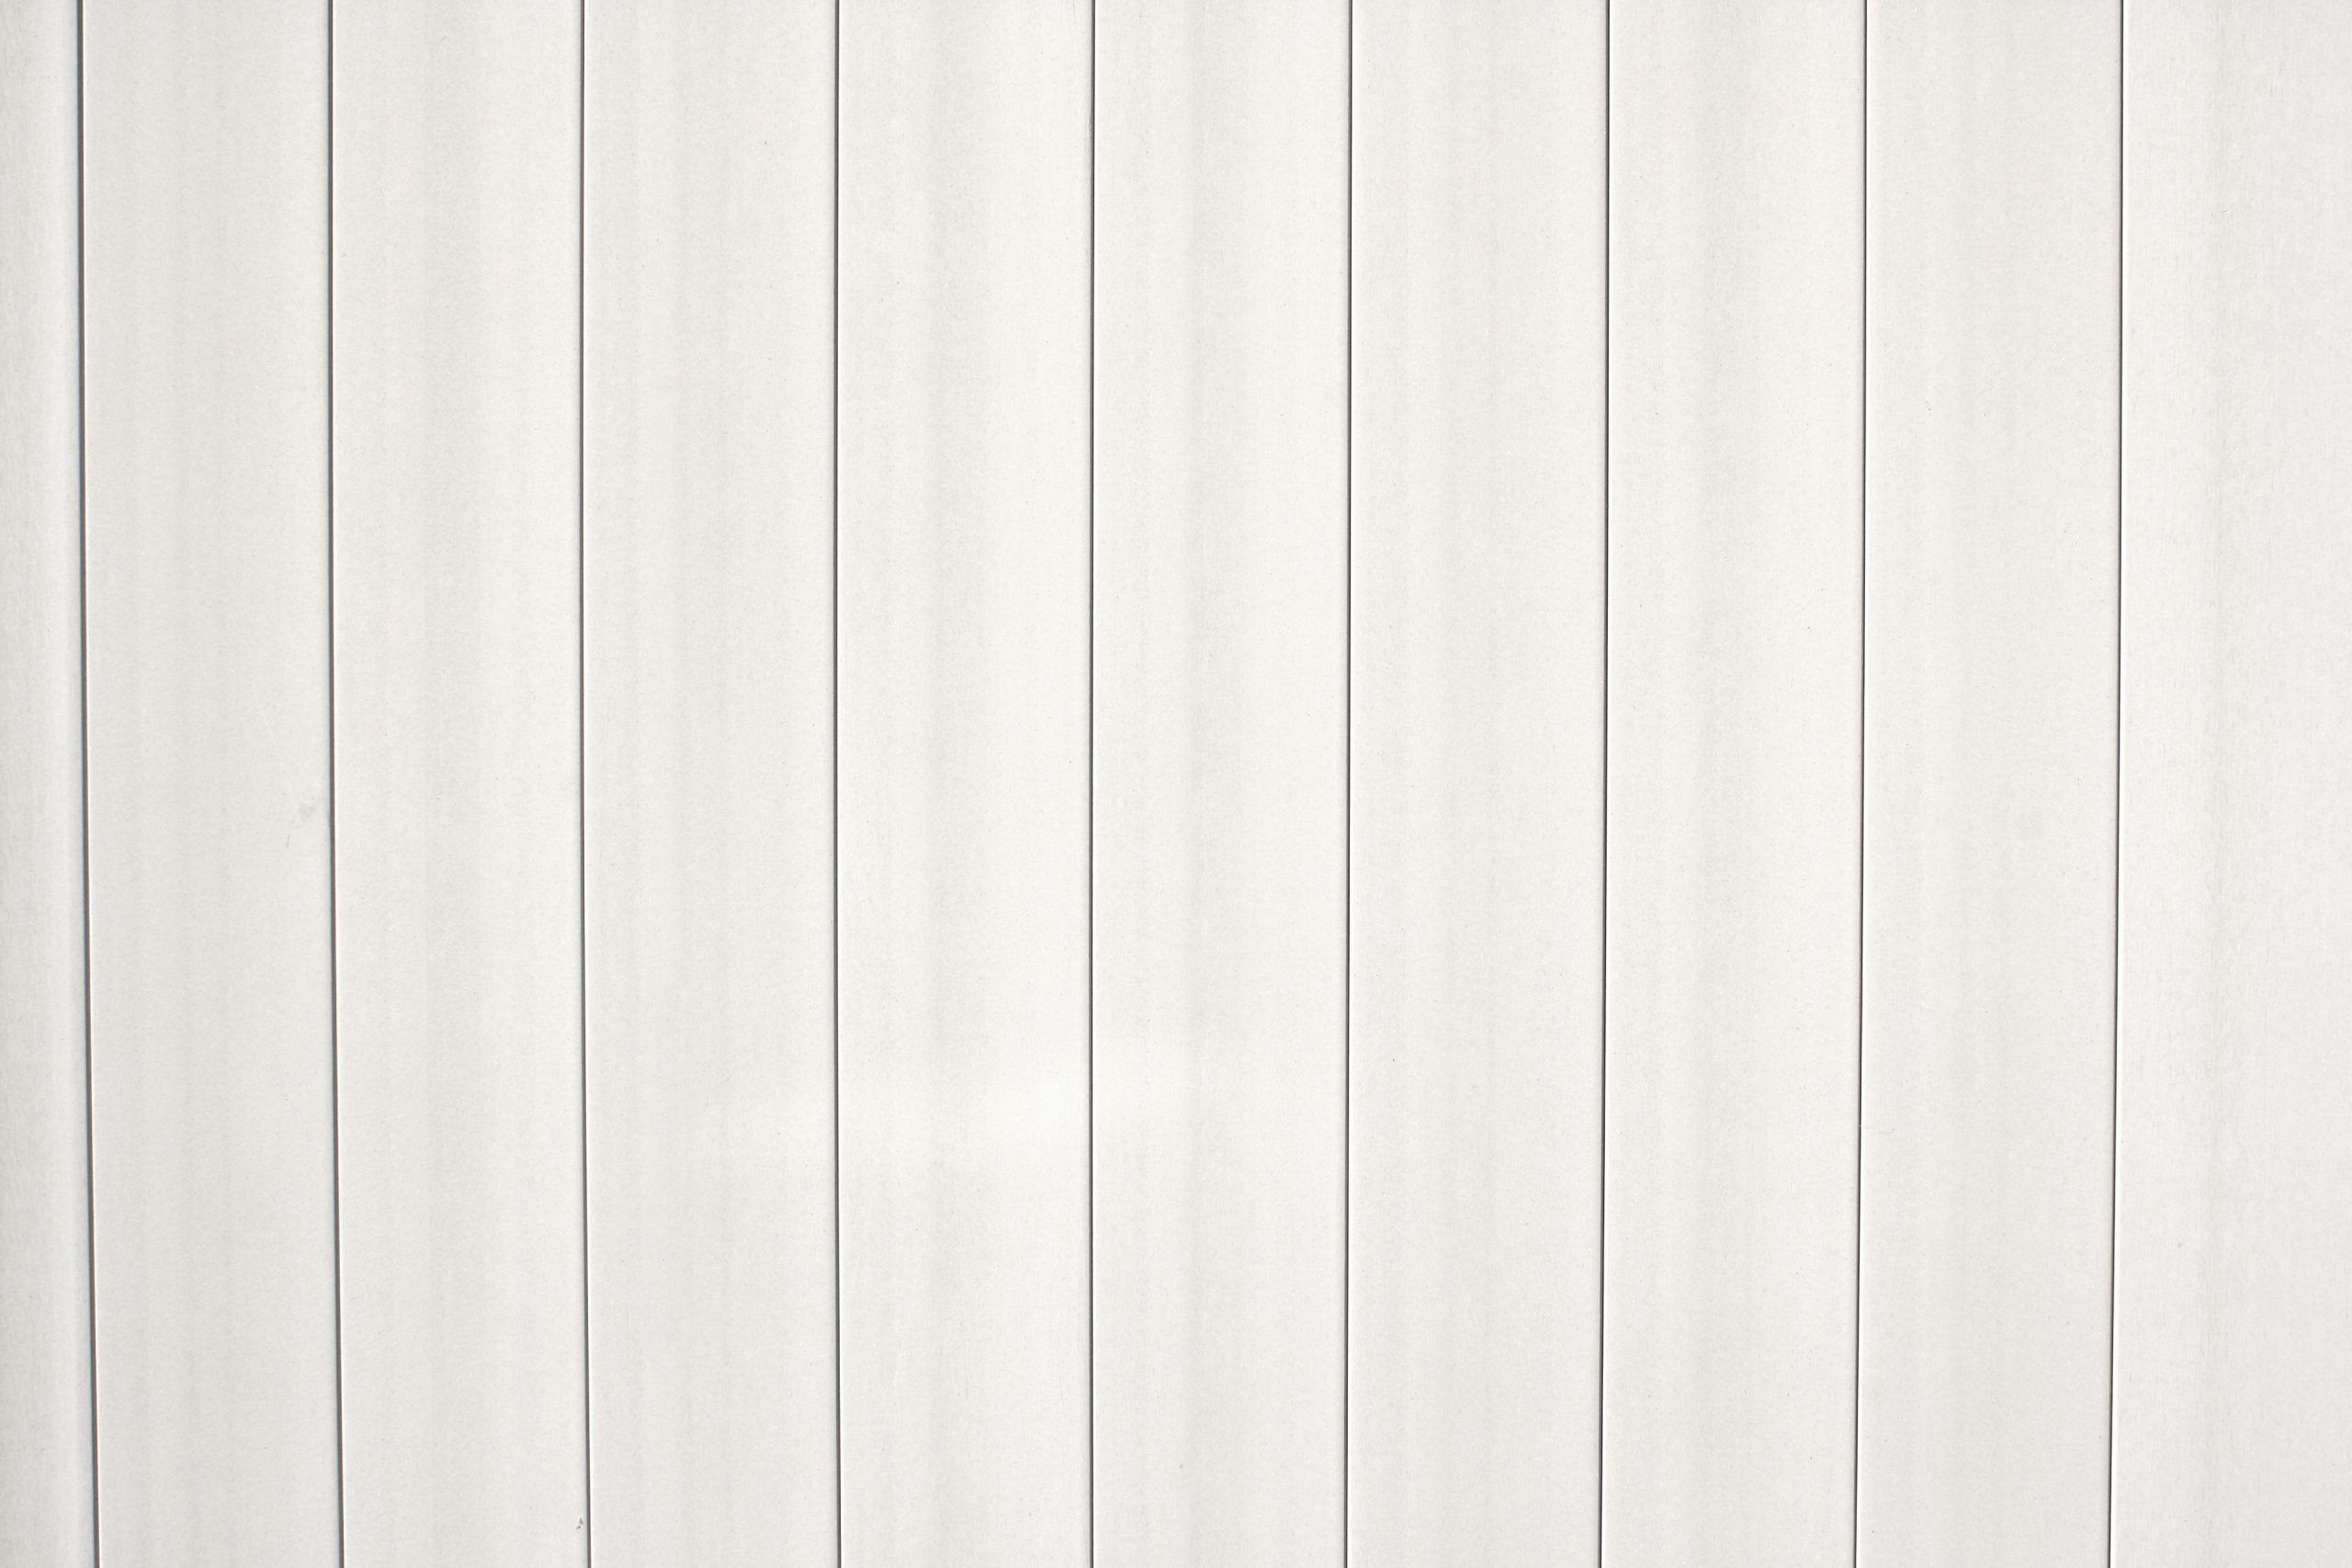 عکسی زیبا و ساده از بافت چوب سفید برای طراحی معماری و مبلمان 